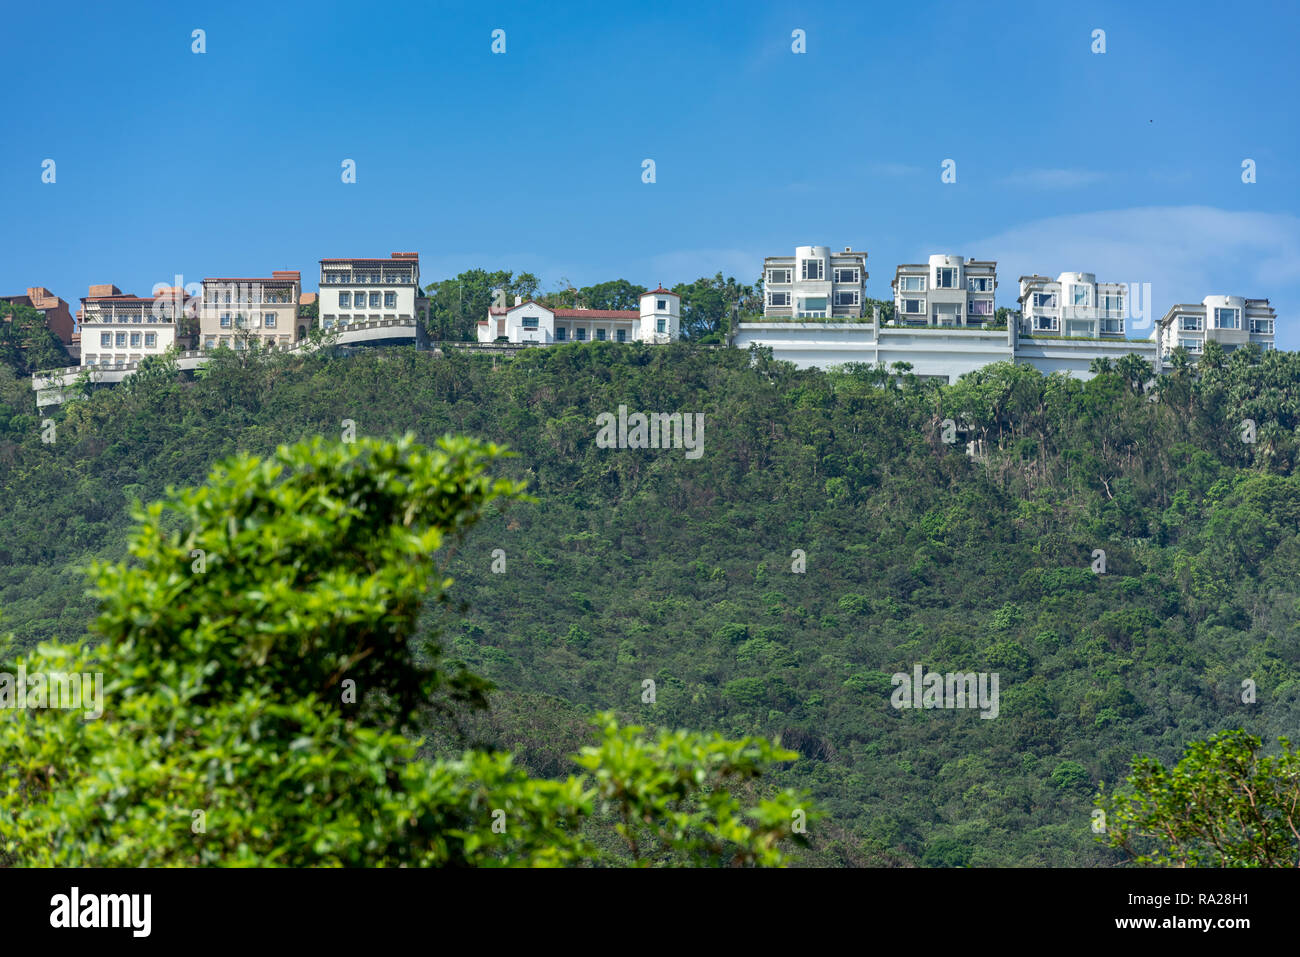 Estas lujosas viviendas a lo largo de Peak Road, en Hong Kong tienen vistas espectaculares de Aberdeen Country Park, los dos embalses y Deep Water Bay. Foto de stock